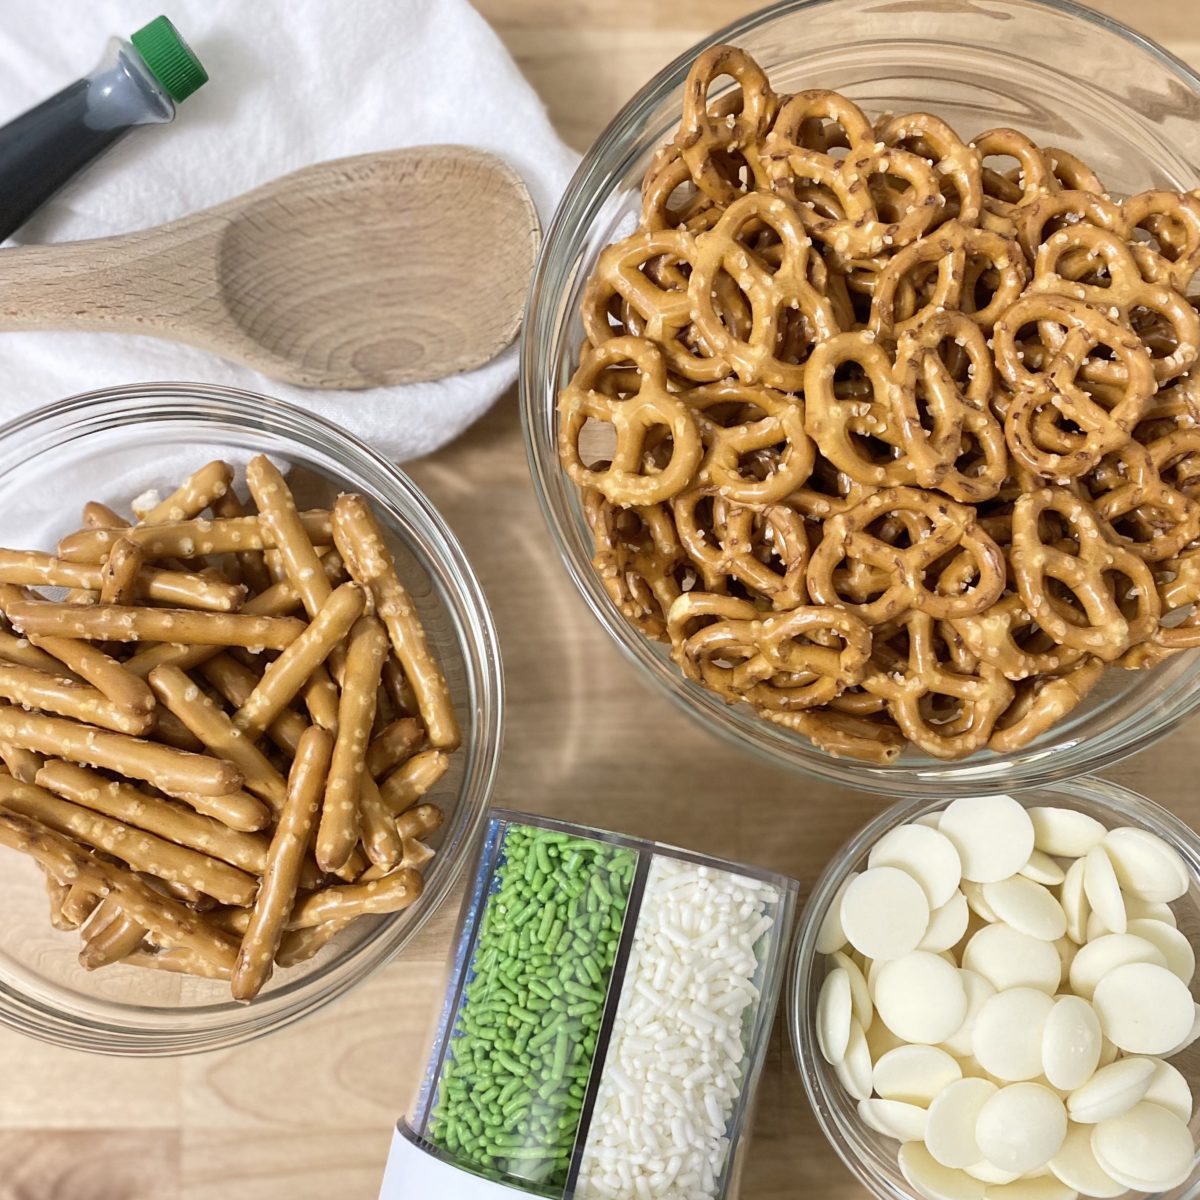 Ingredients to make pretzel shamrocks including pretzels, melting chocolate wafers, green food coloring, and sprinkles.